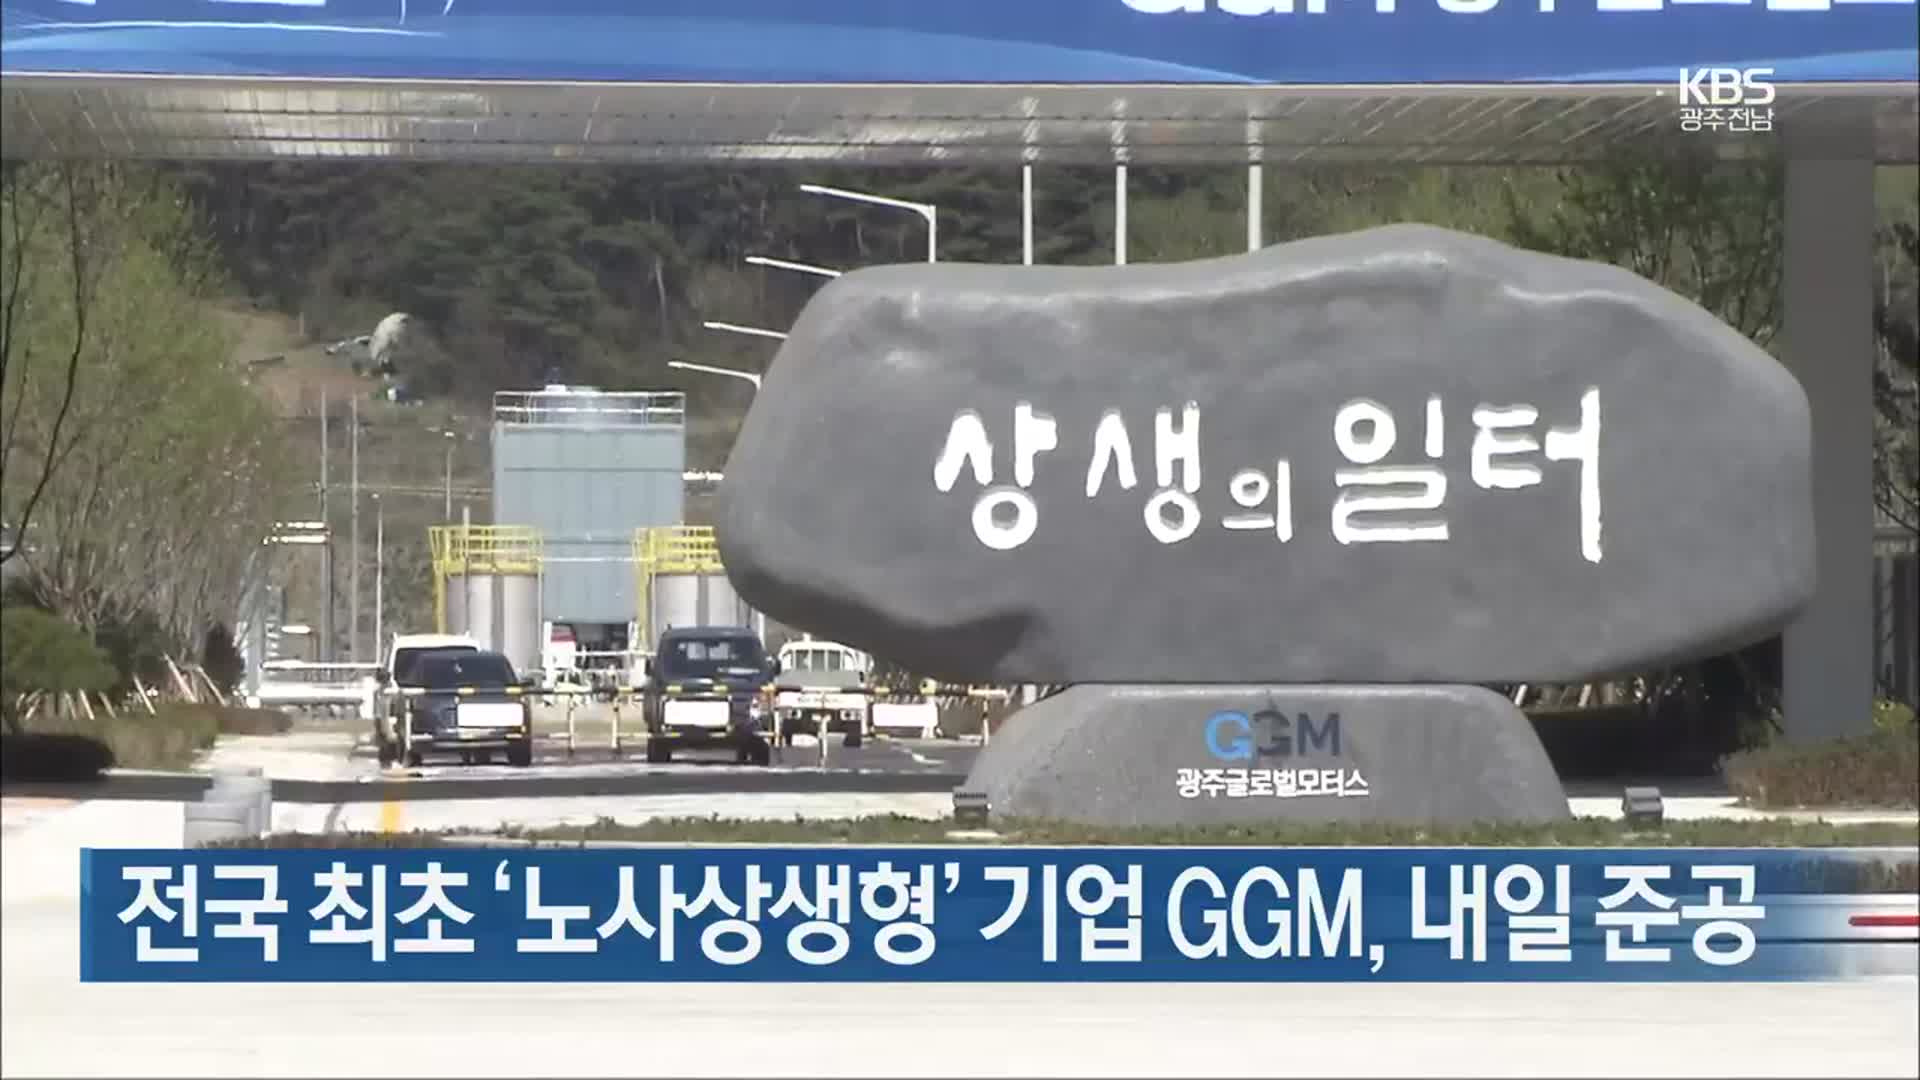 [간추린 뉴스] 전국 최초 ‘노사상생형’ 기업 GGM, 내일 준공 외